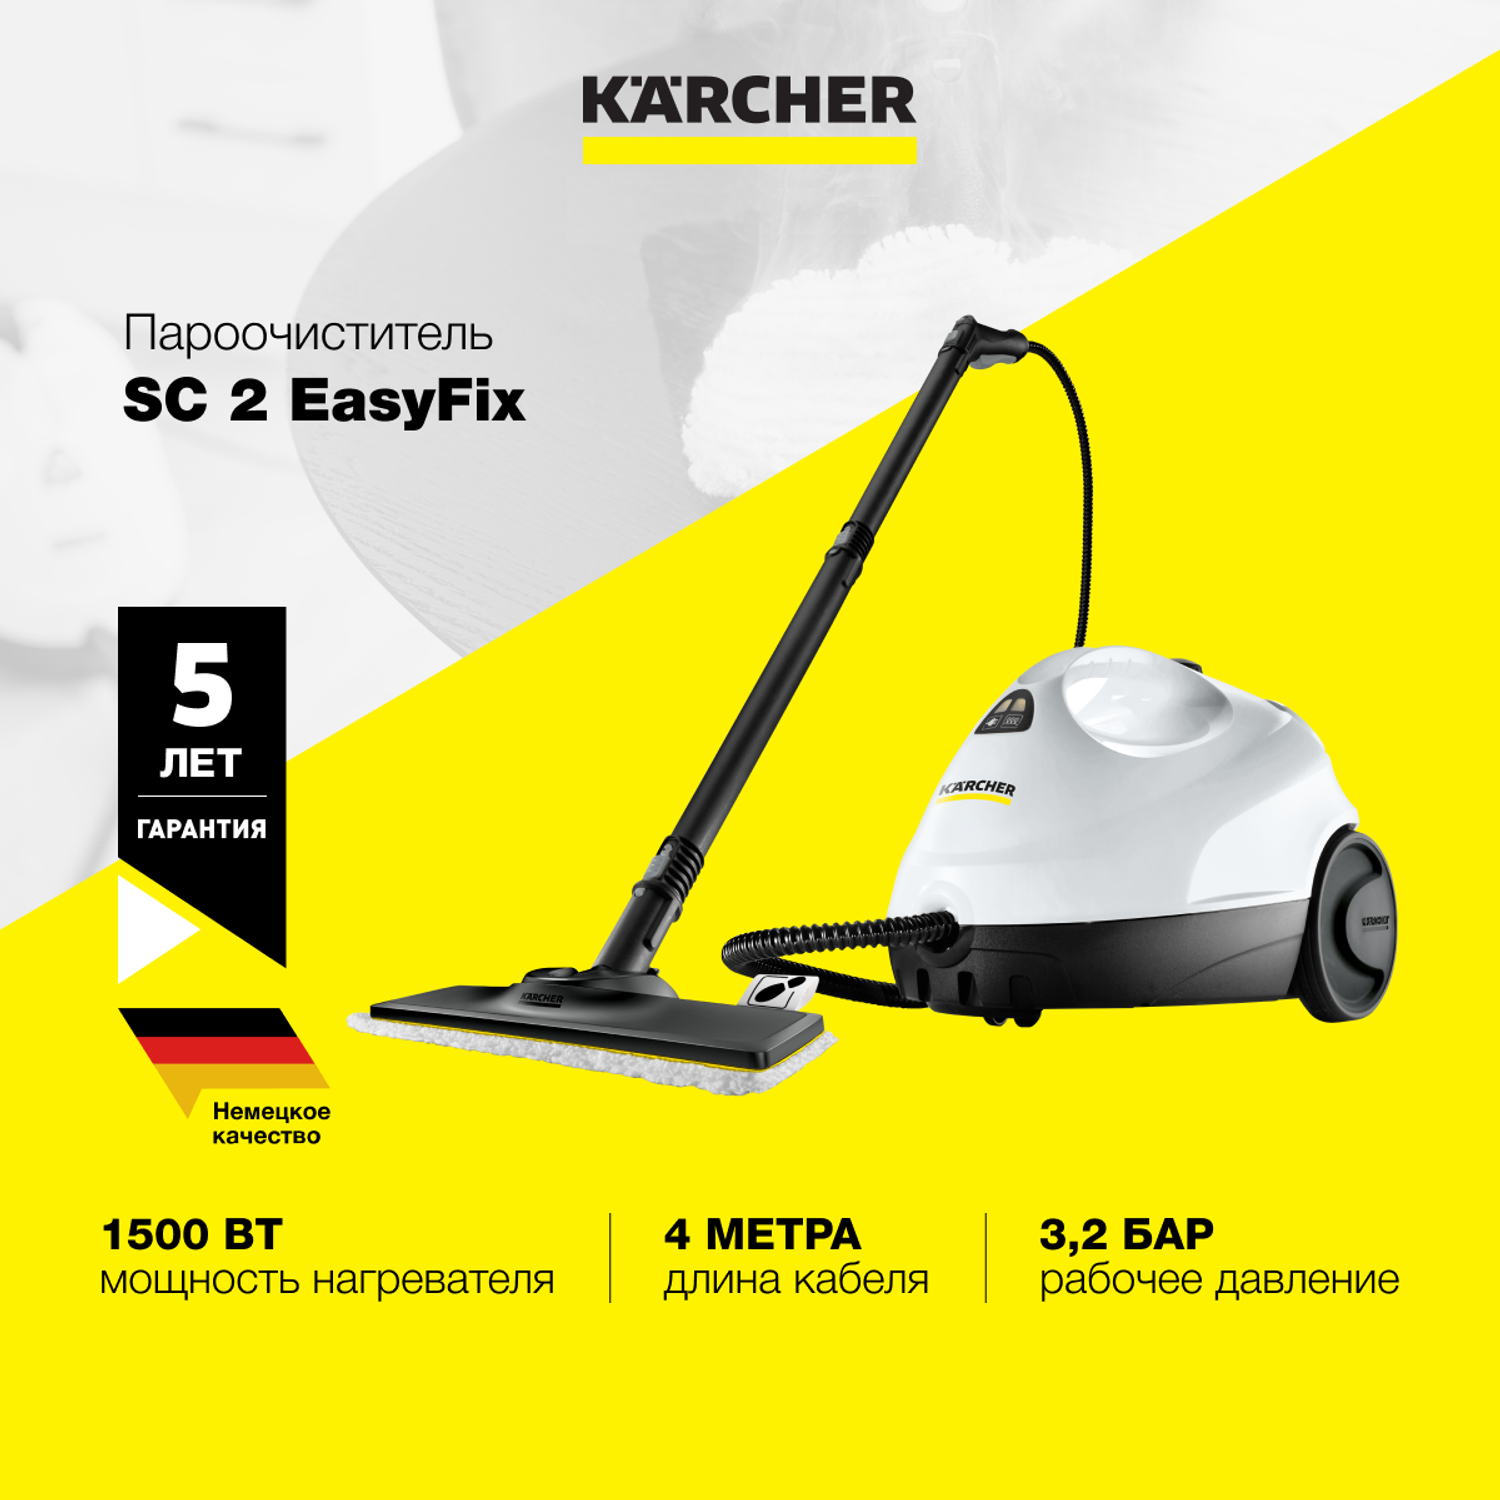 Пароочиститель Karcher SC 2 EasyFix EU 1.512-600.0 с двухступенчатым регулятором расхода пара на рукоятке - фото 1